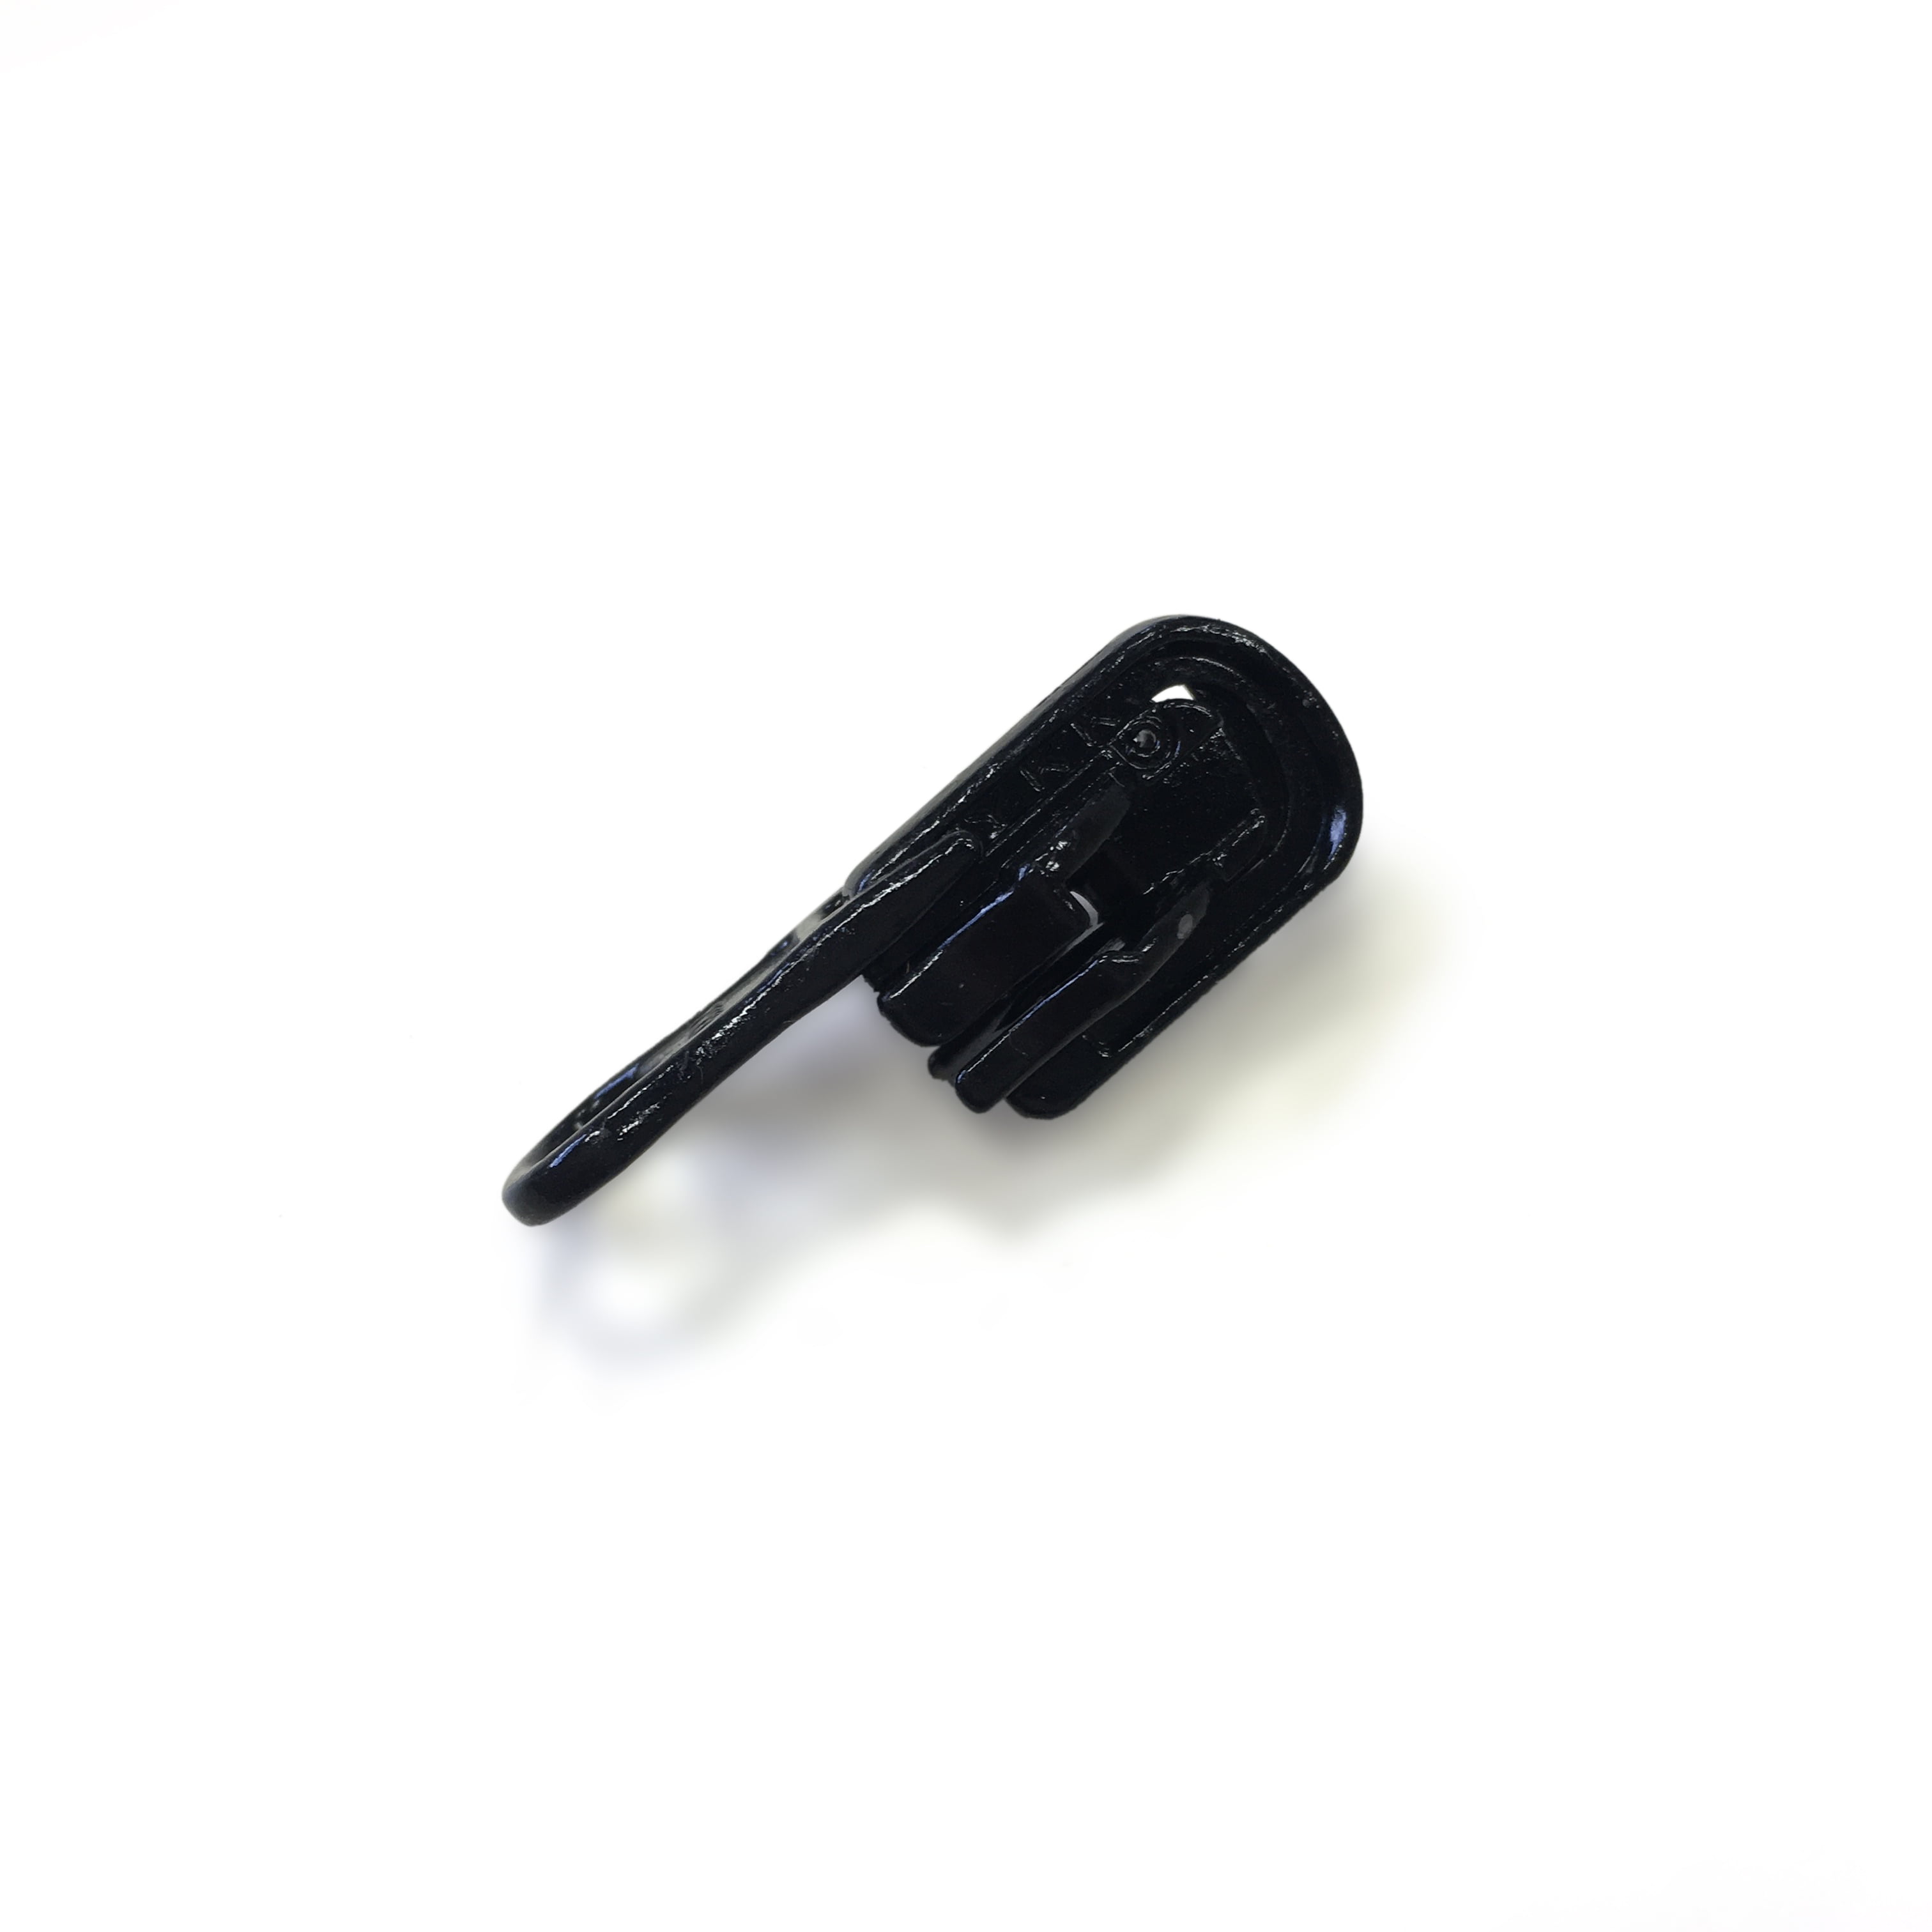 #5 Reversible Swing-Around Handle Slider For Nylon Coil Zipper